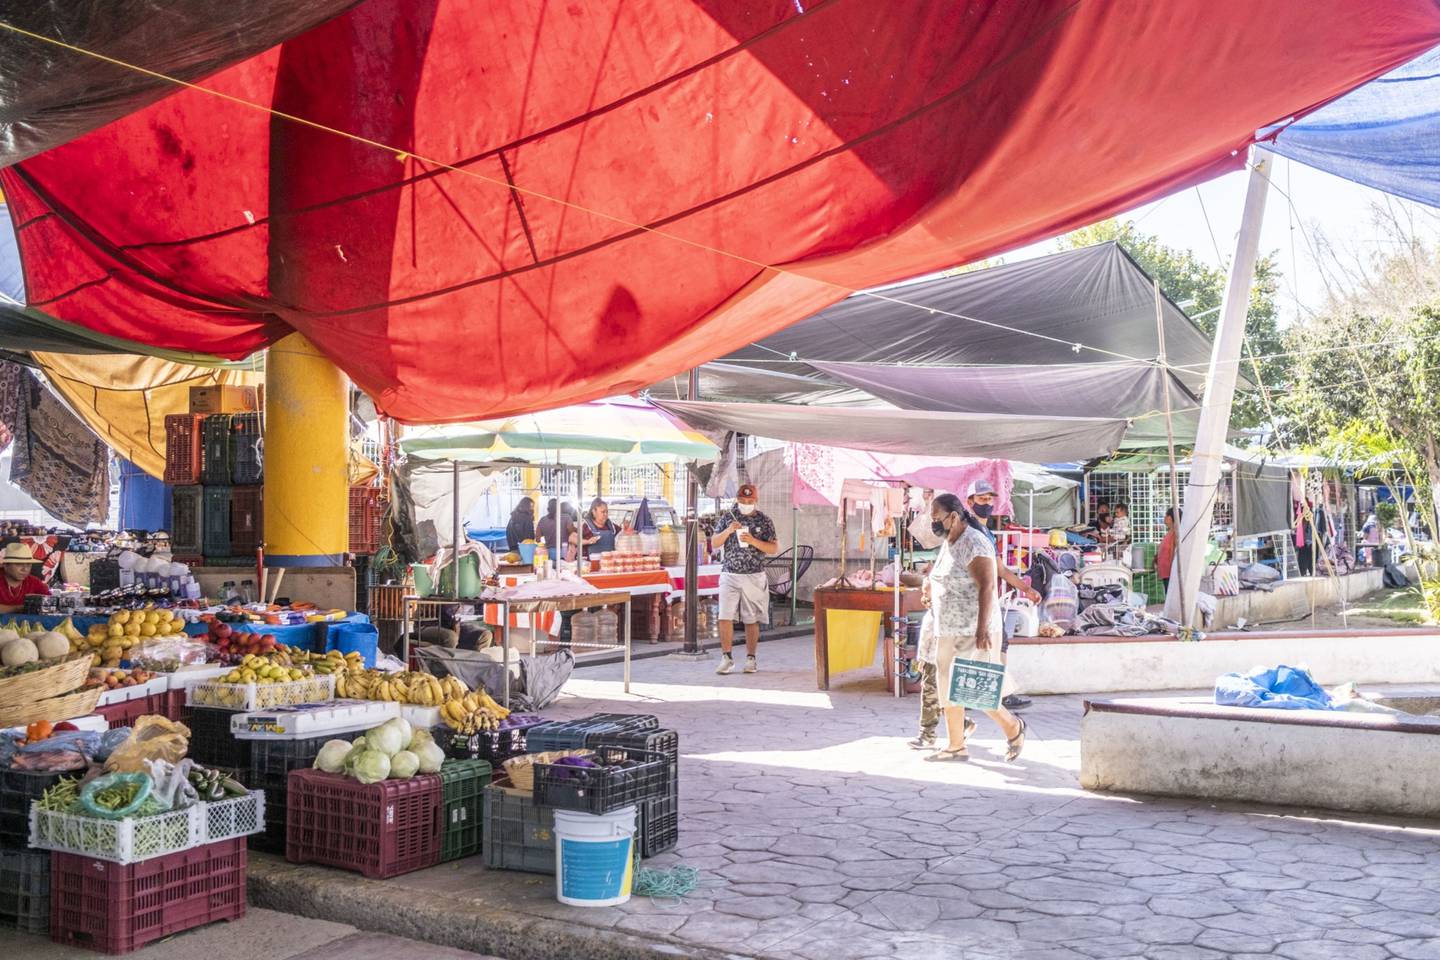 A market in Tehuitzingo, Puebla state, Mexico.